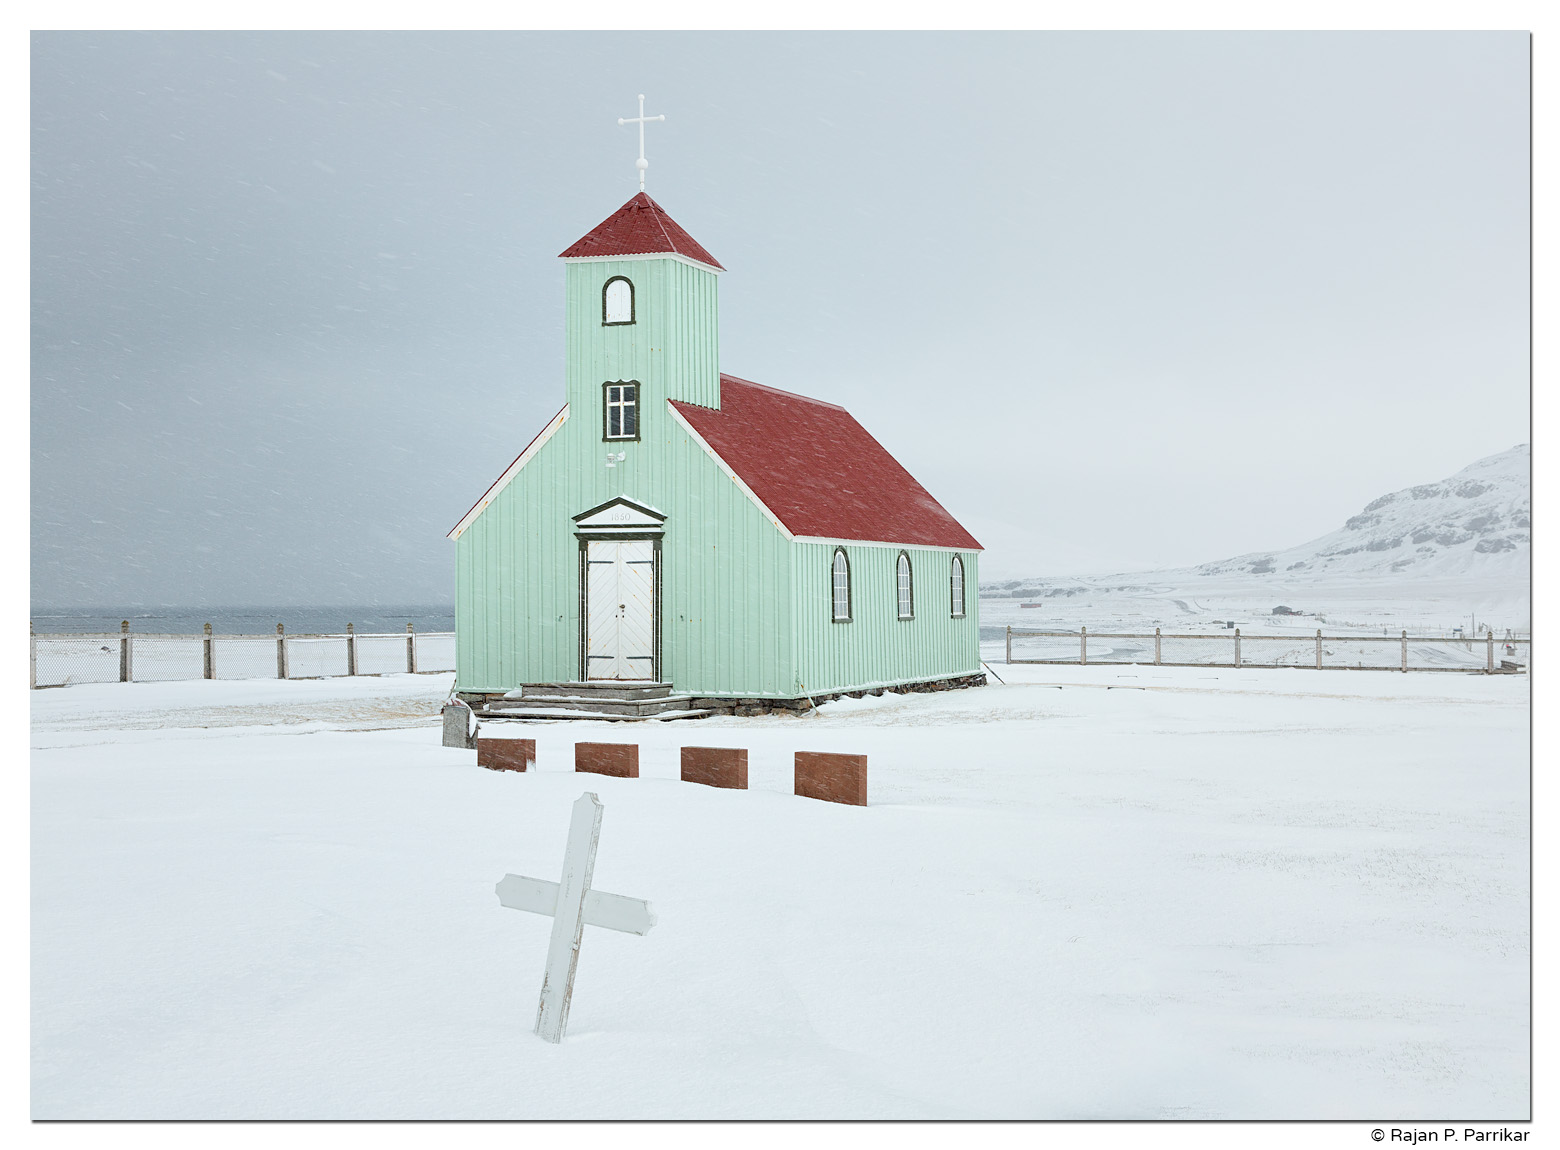 Árnes church in Trékyllisvík, Strandir, Iceland